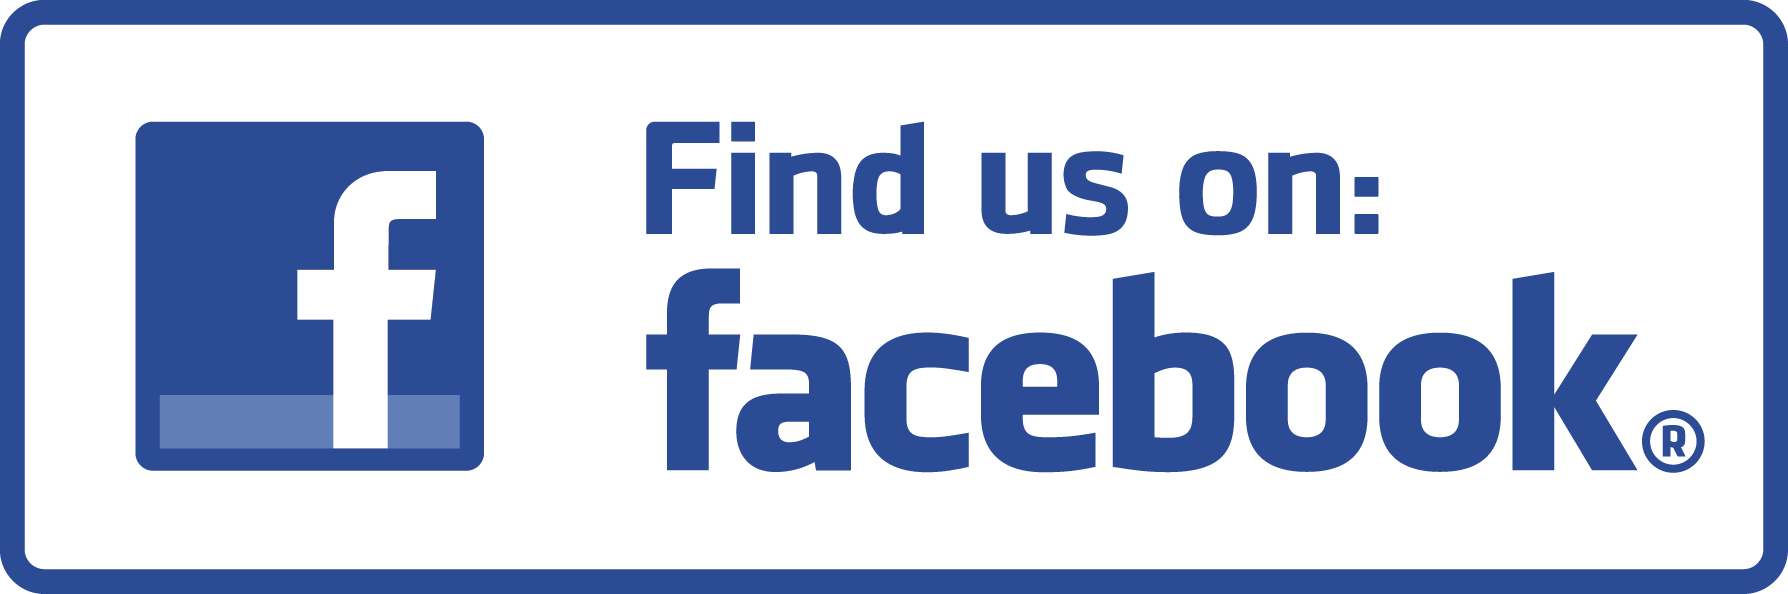 Find Us On Facebook Logo - Find Us on Facebook Icon transparent PNG - StickPNG